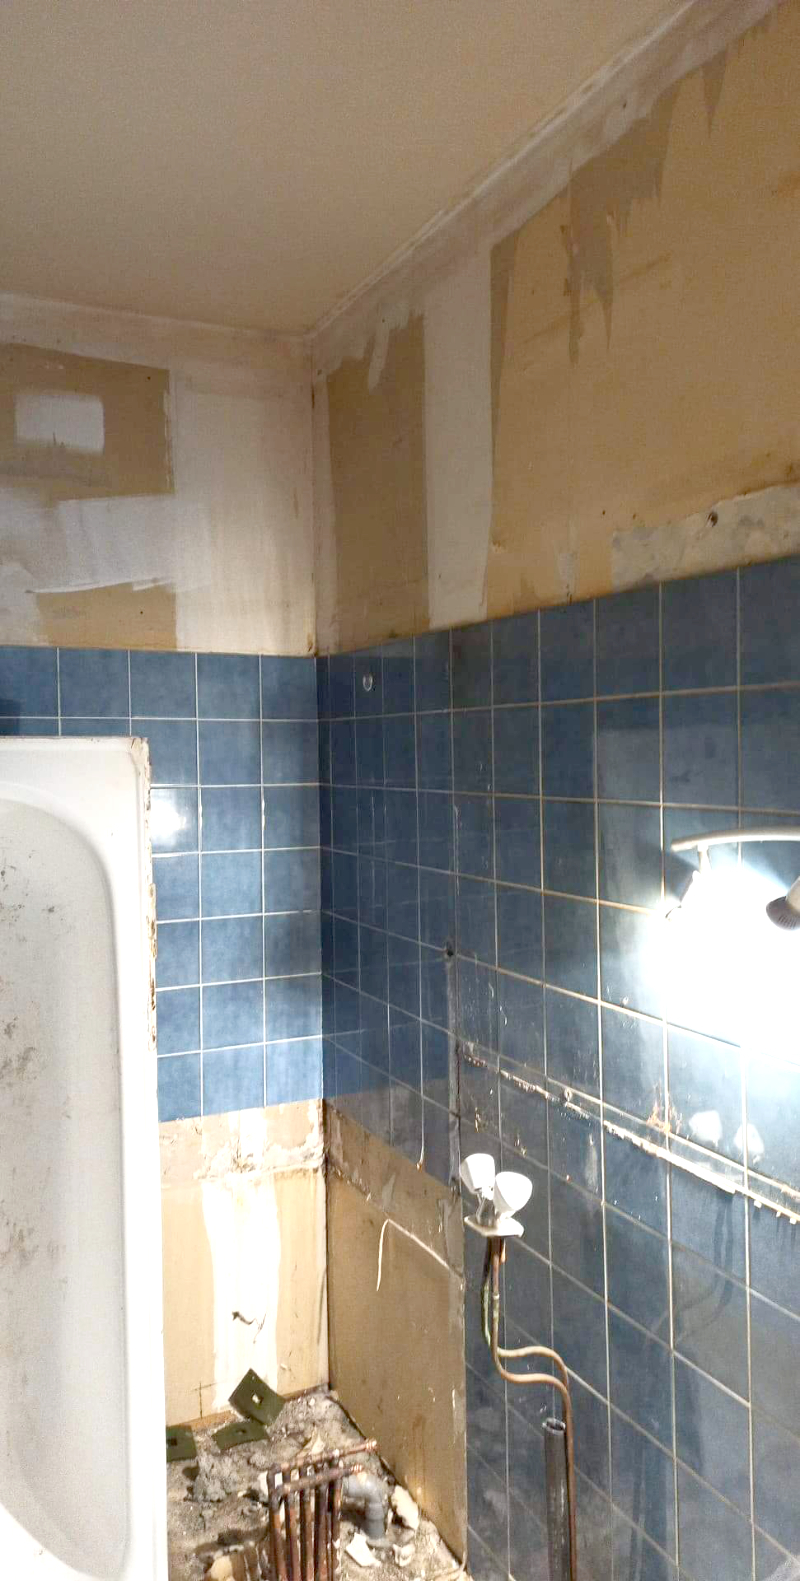 Rénovation complète d'une salle de bain dans la région toulousaine